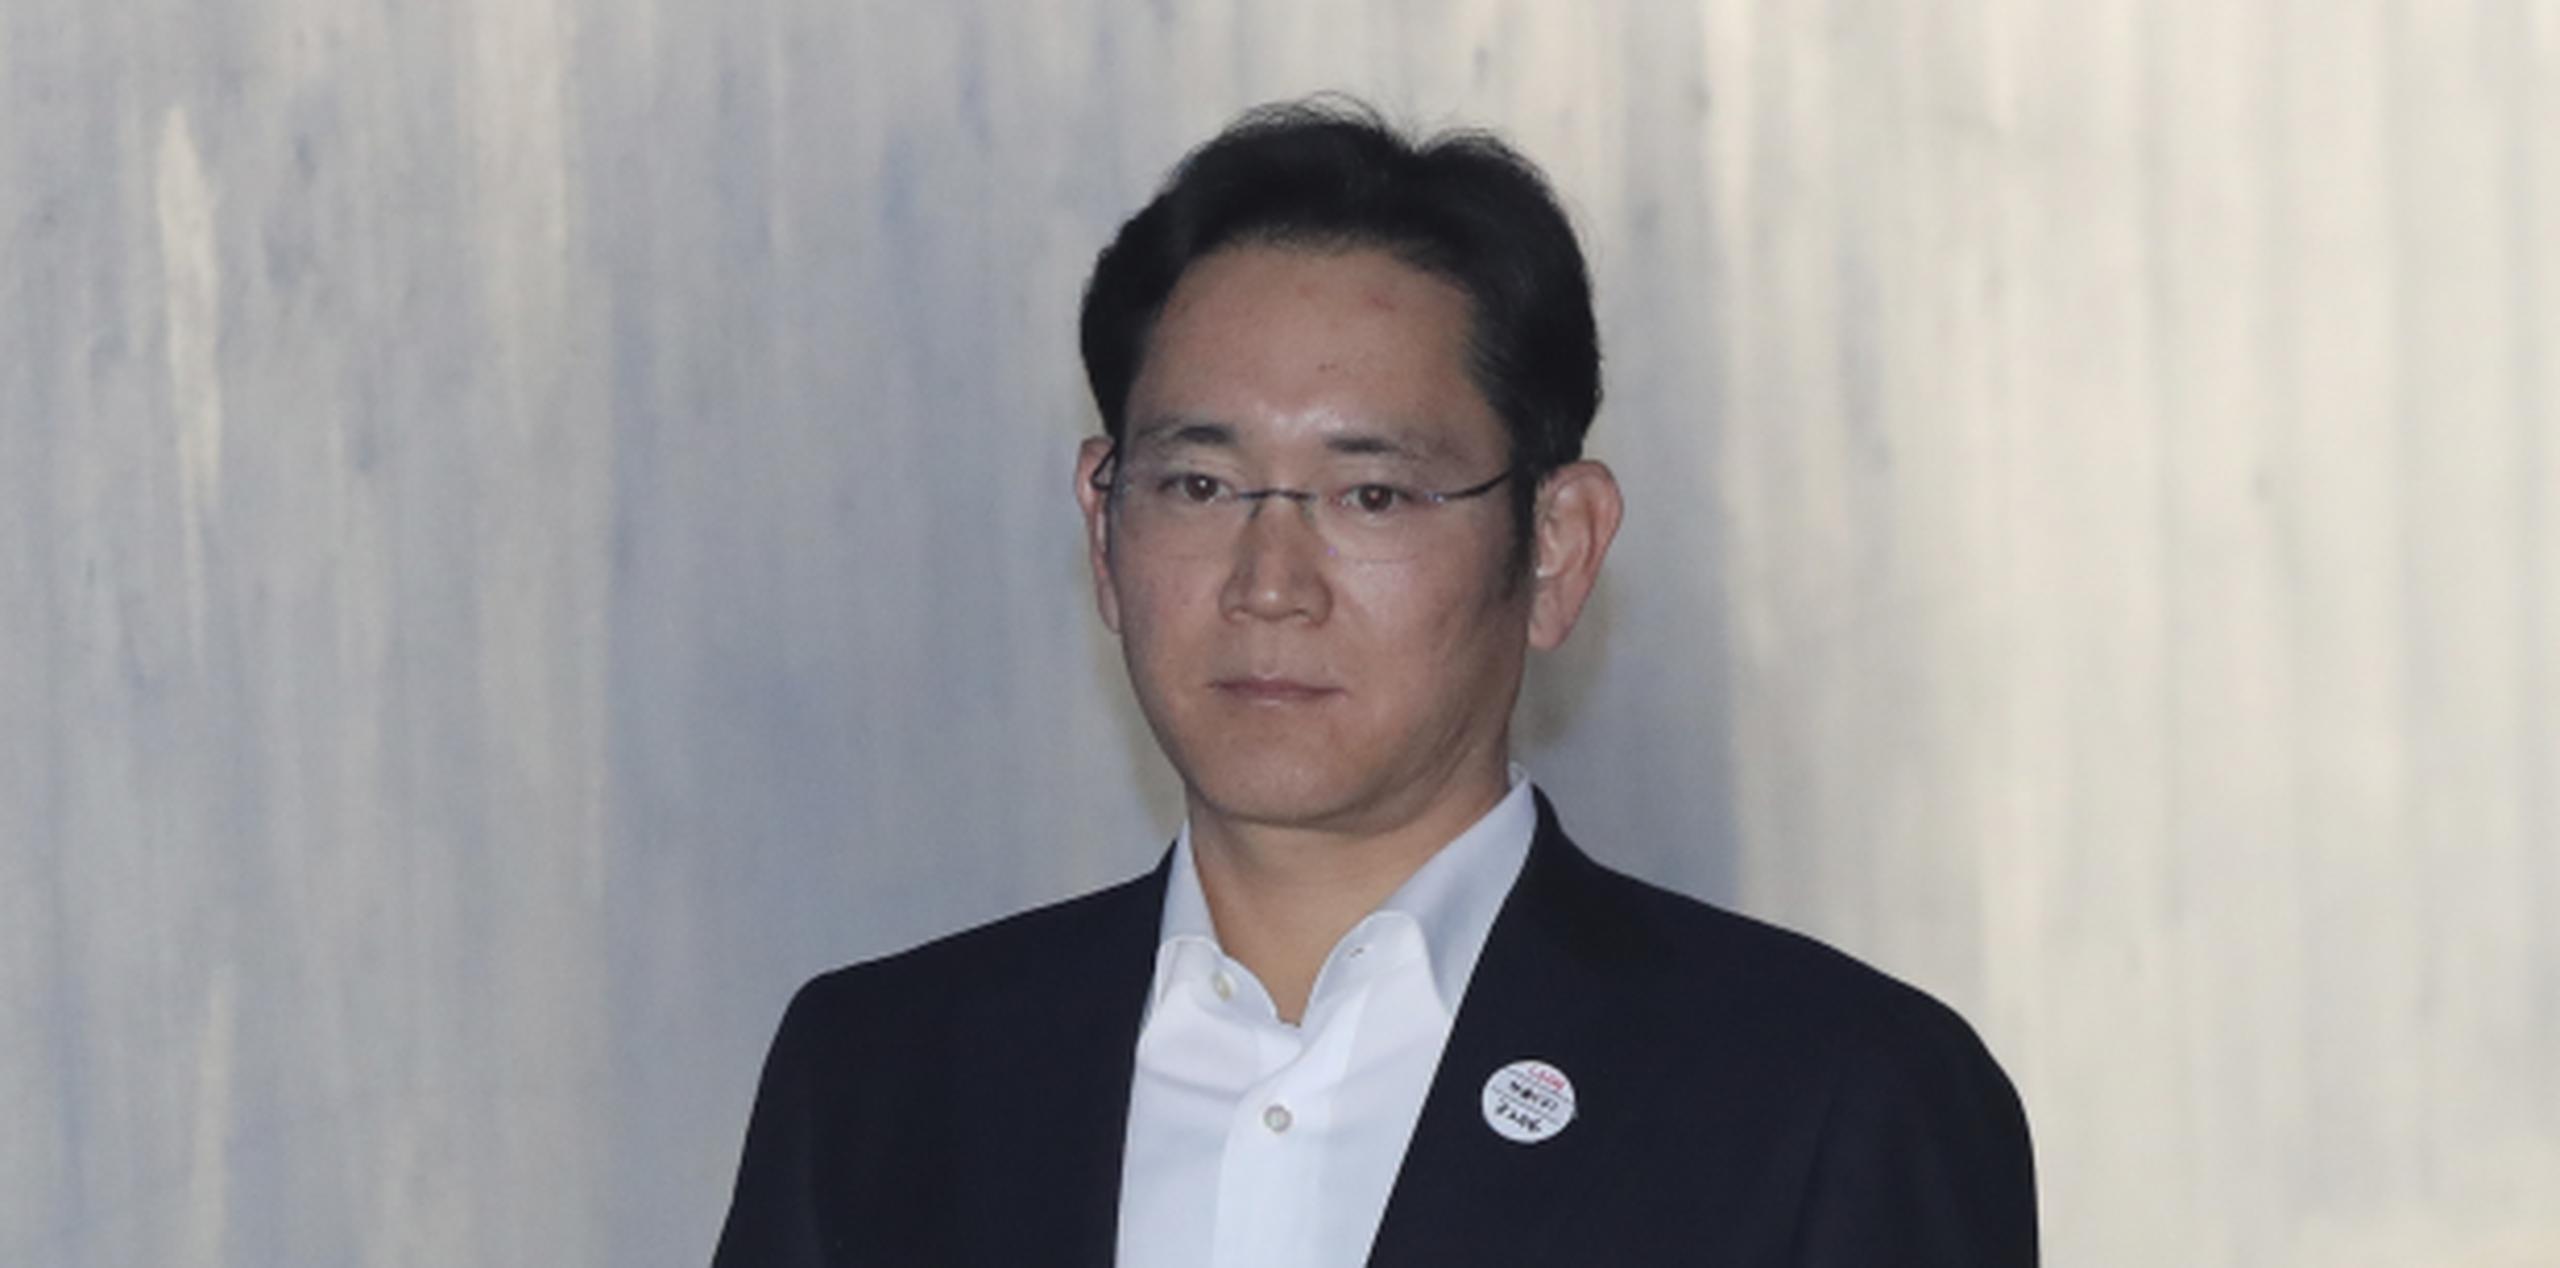 Se espera que el alto tribunal se pronuncie en las próximas semanas. En la foto, el heredero de Samsung Lee Jae-yong. (AP / Lee Jin-man)